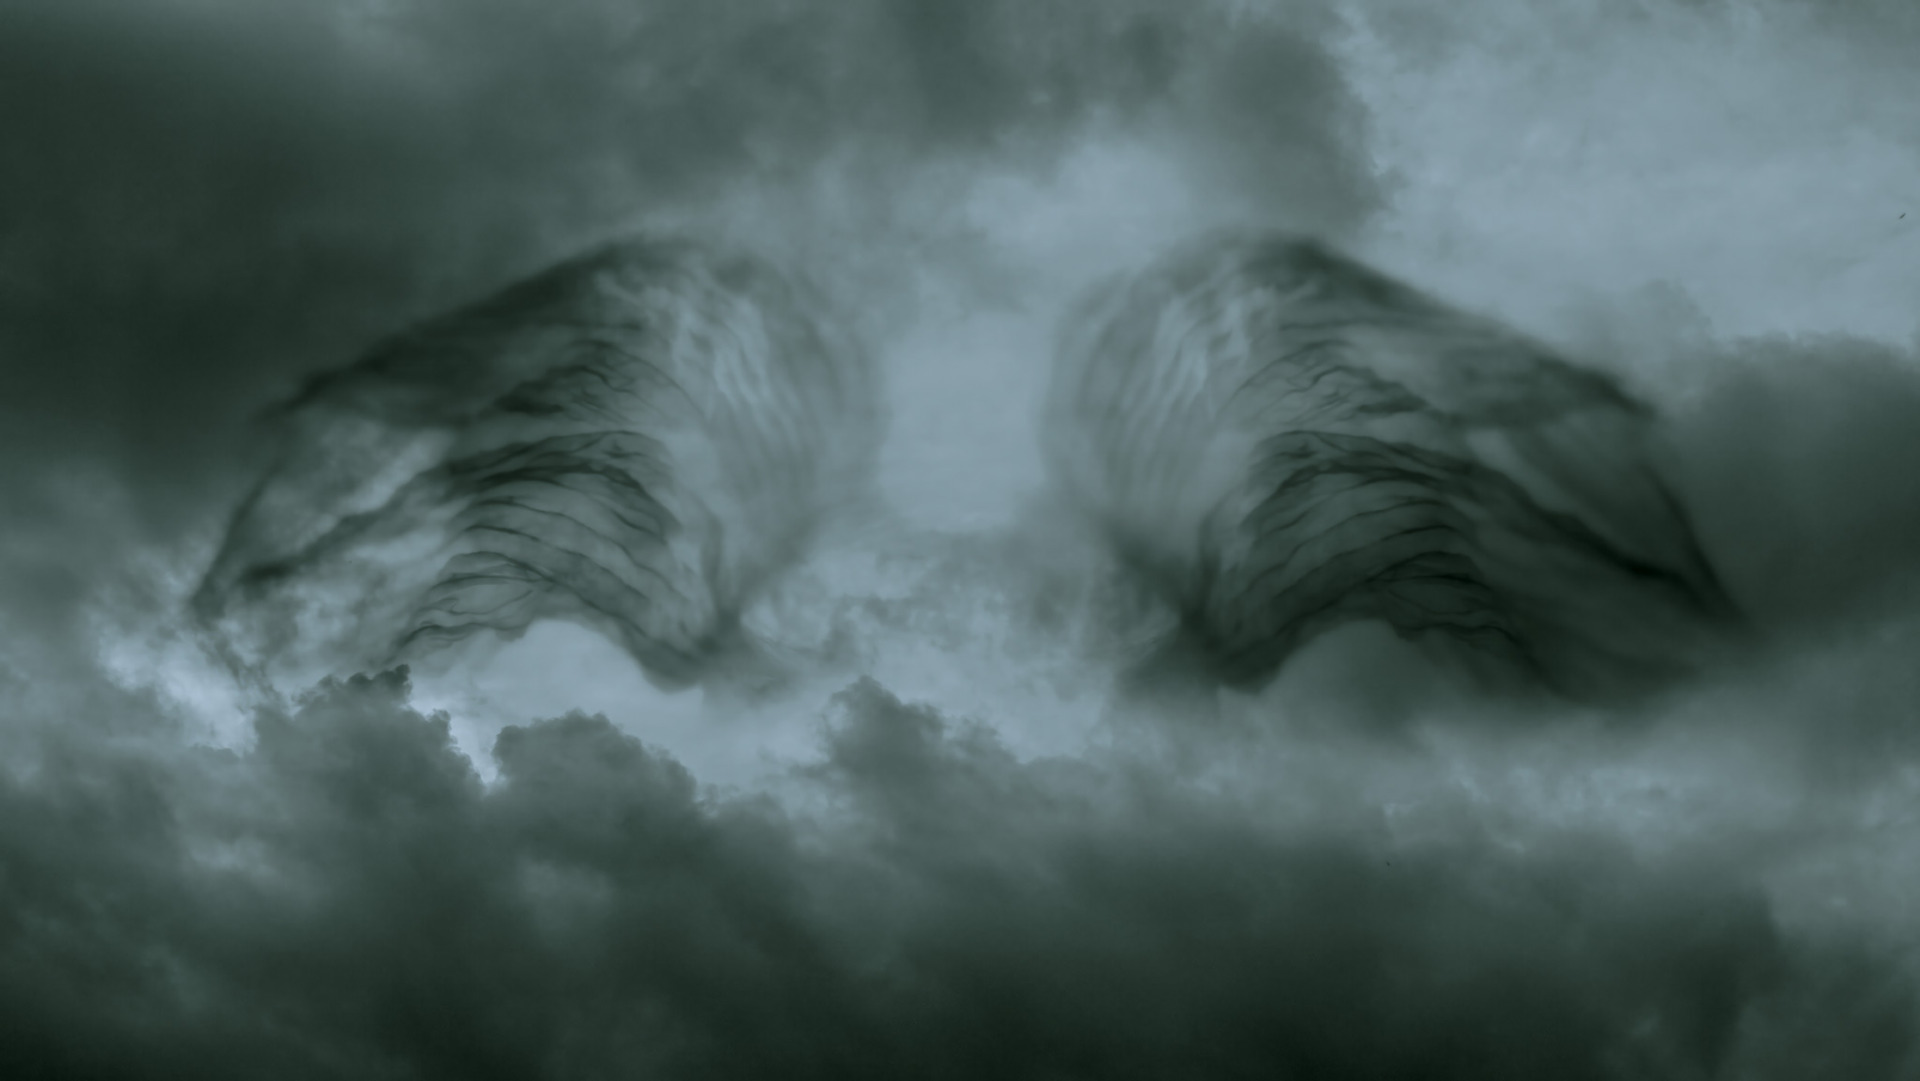 « Le rêveur a toujours un nuage à transformer. Le nuage nous aide à rêver la transformation. » Gaston Bachelard, L’air et les songes. Technique: impression pigmentaire sur papier Canson Etching Rag contrecollé sur dibond, 90 x 160 cm.